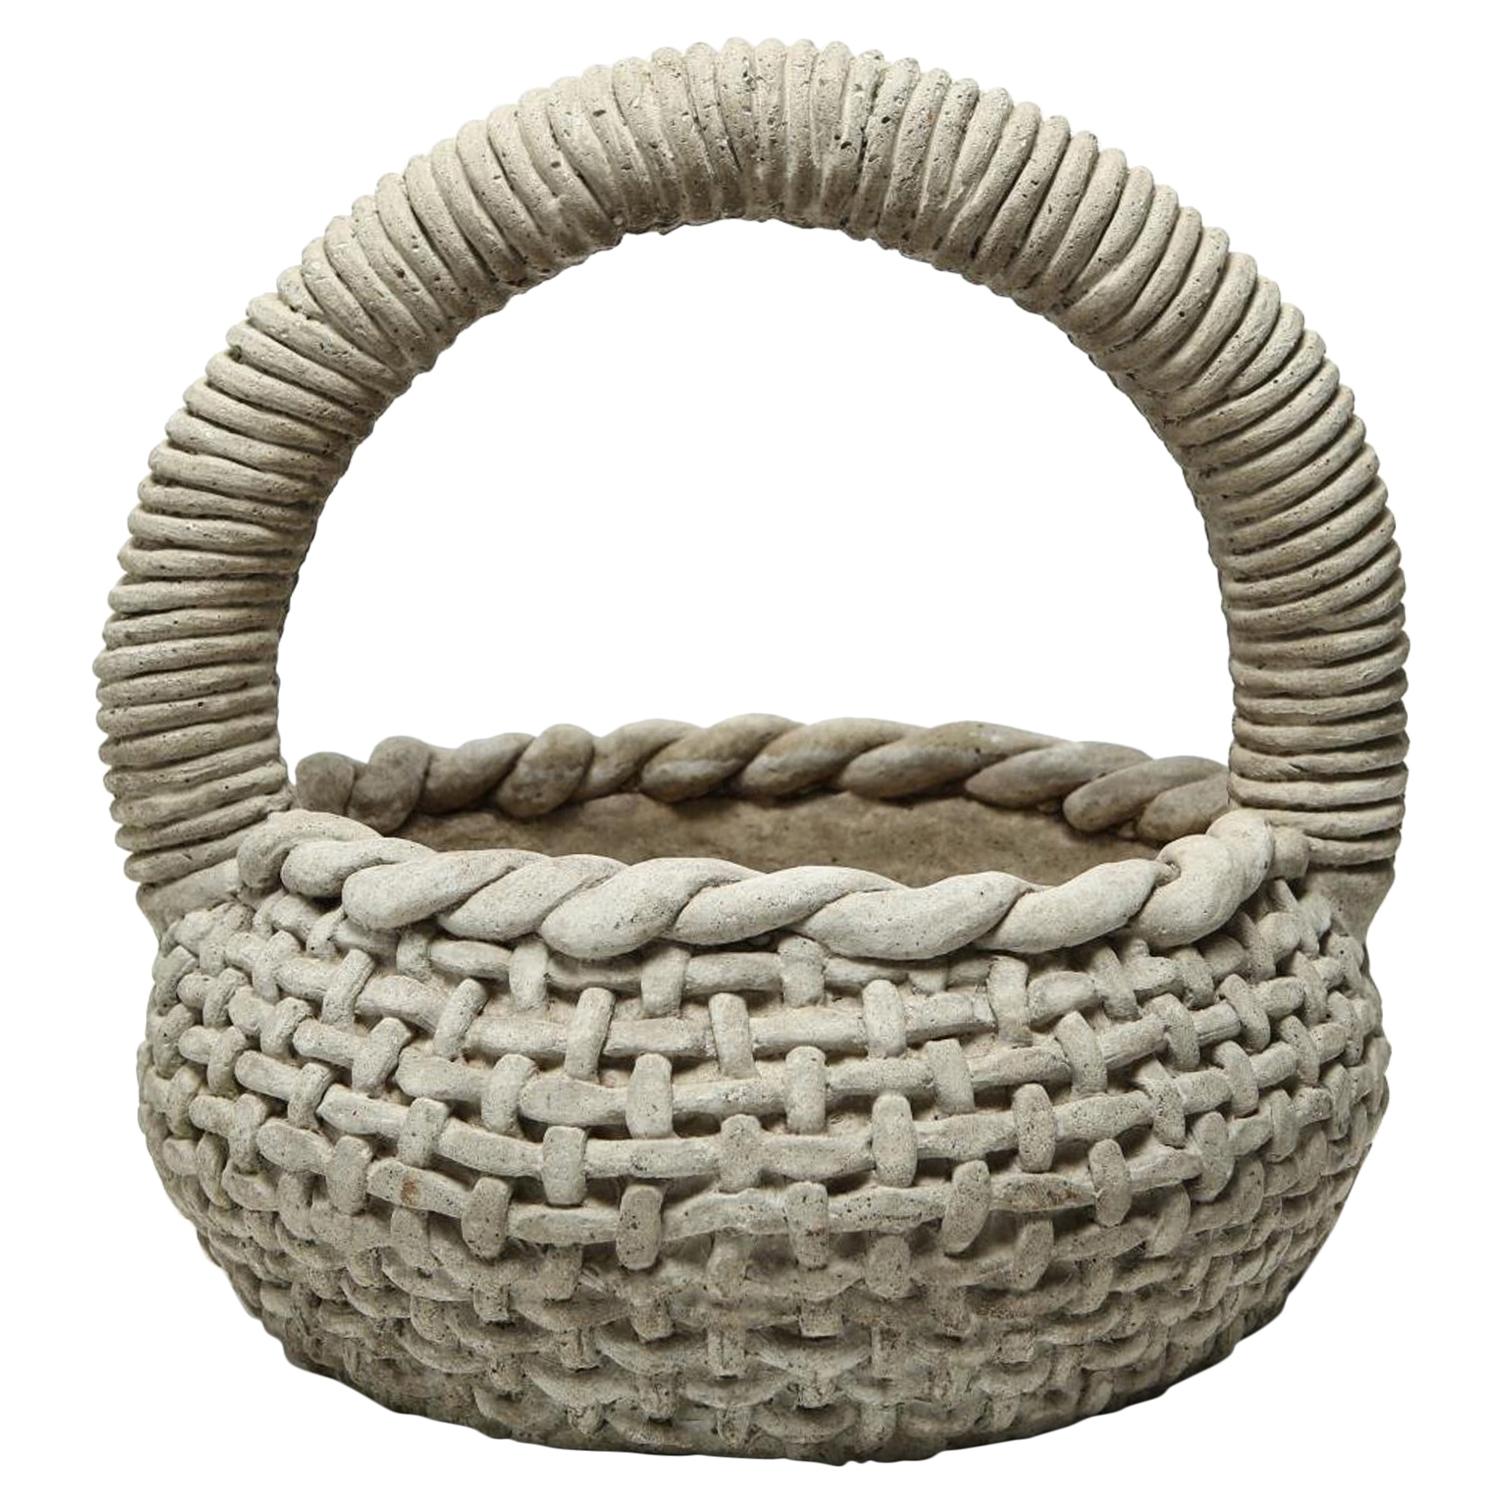 Cast Stone Organic Modern Twist Handle Garden Sculpture Planter Basket !970s